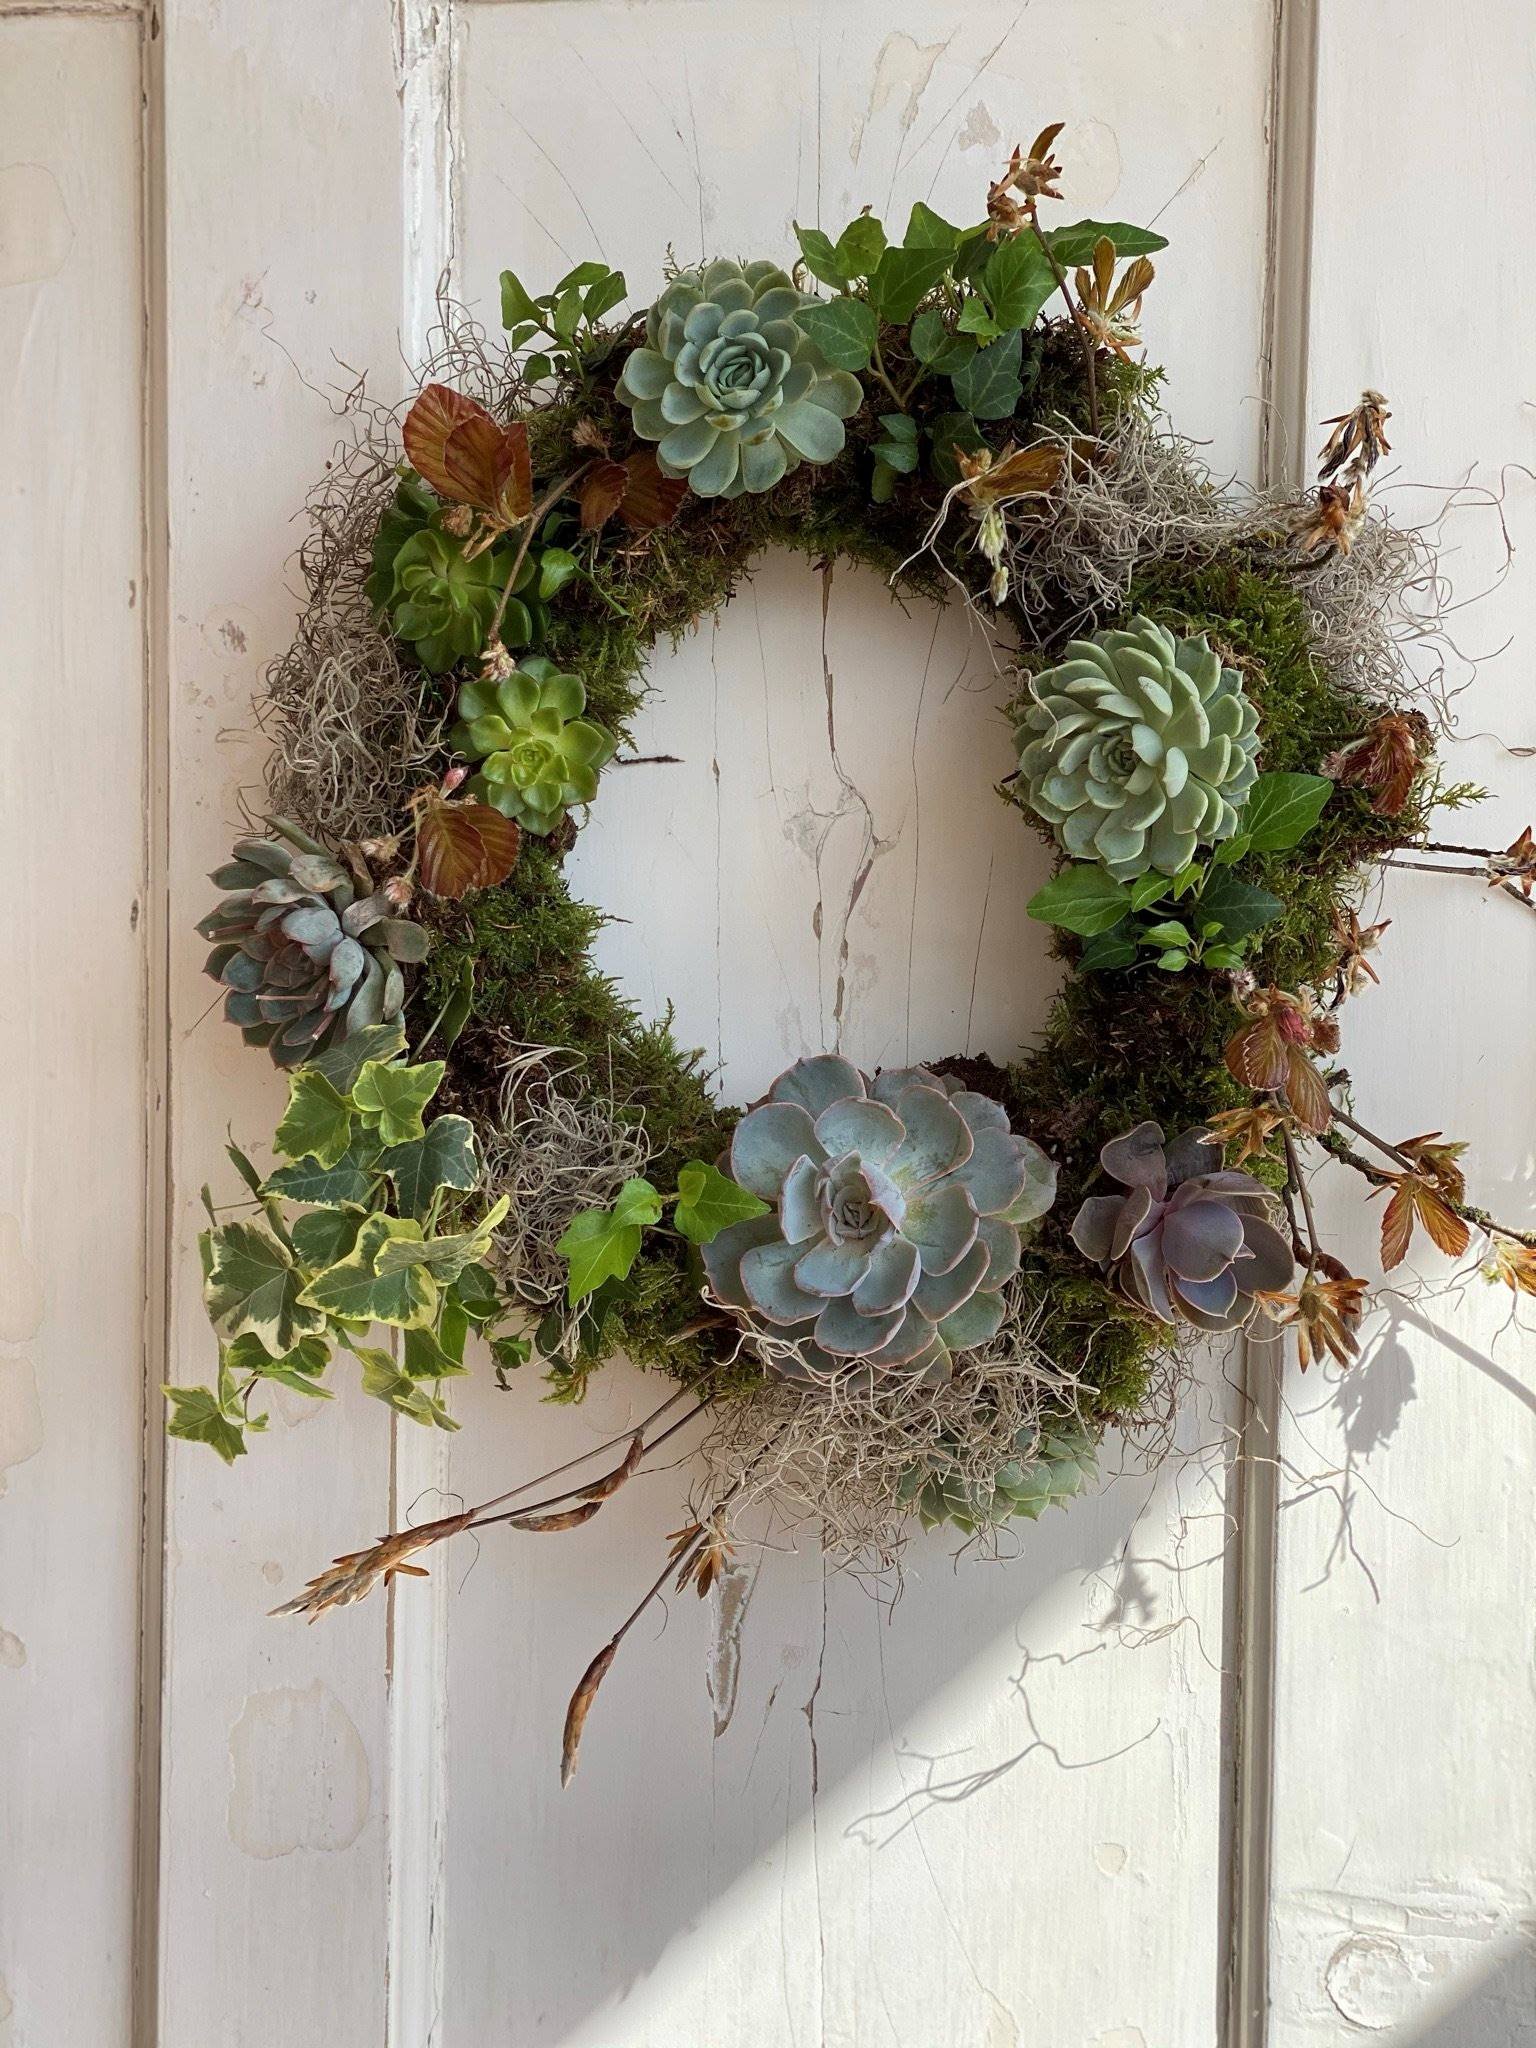 Succulent living wreath displayed on white door